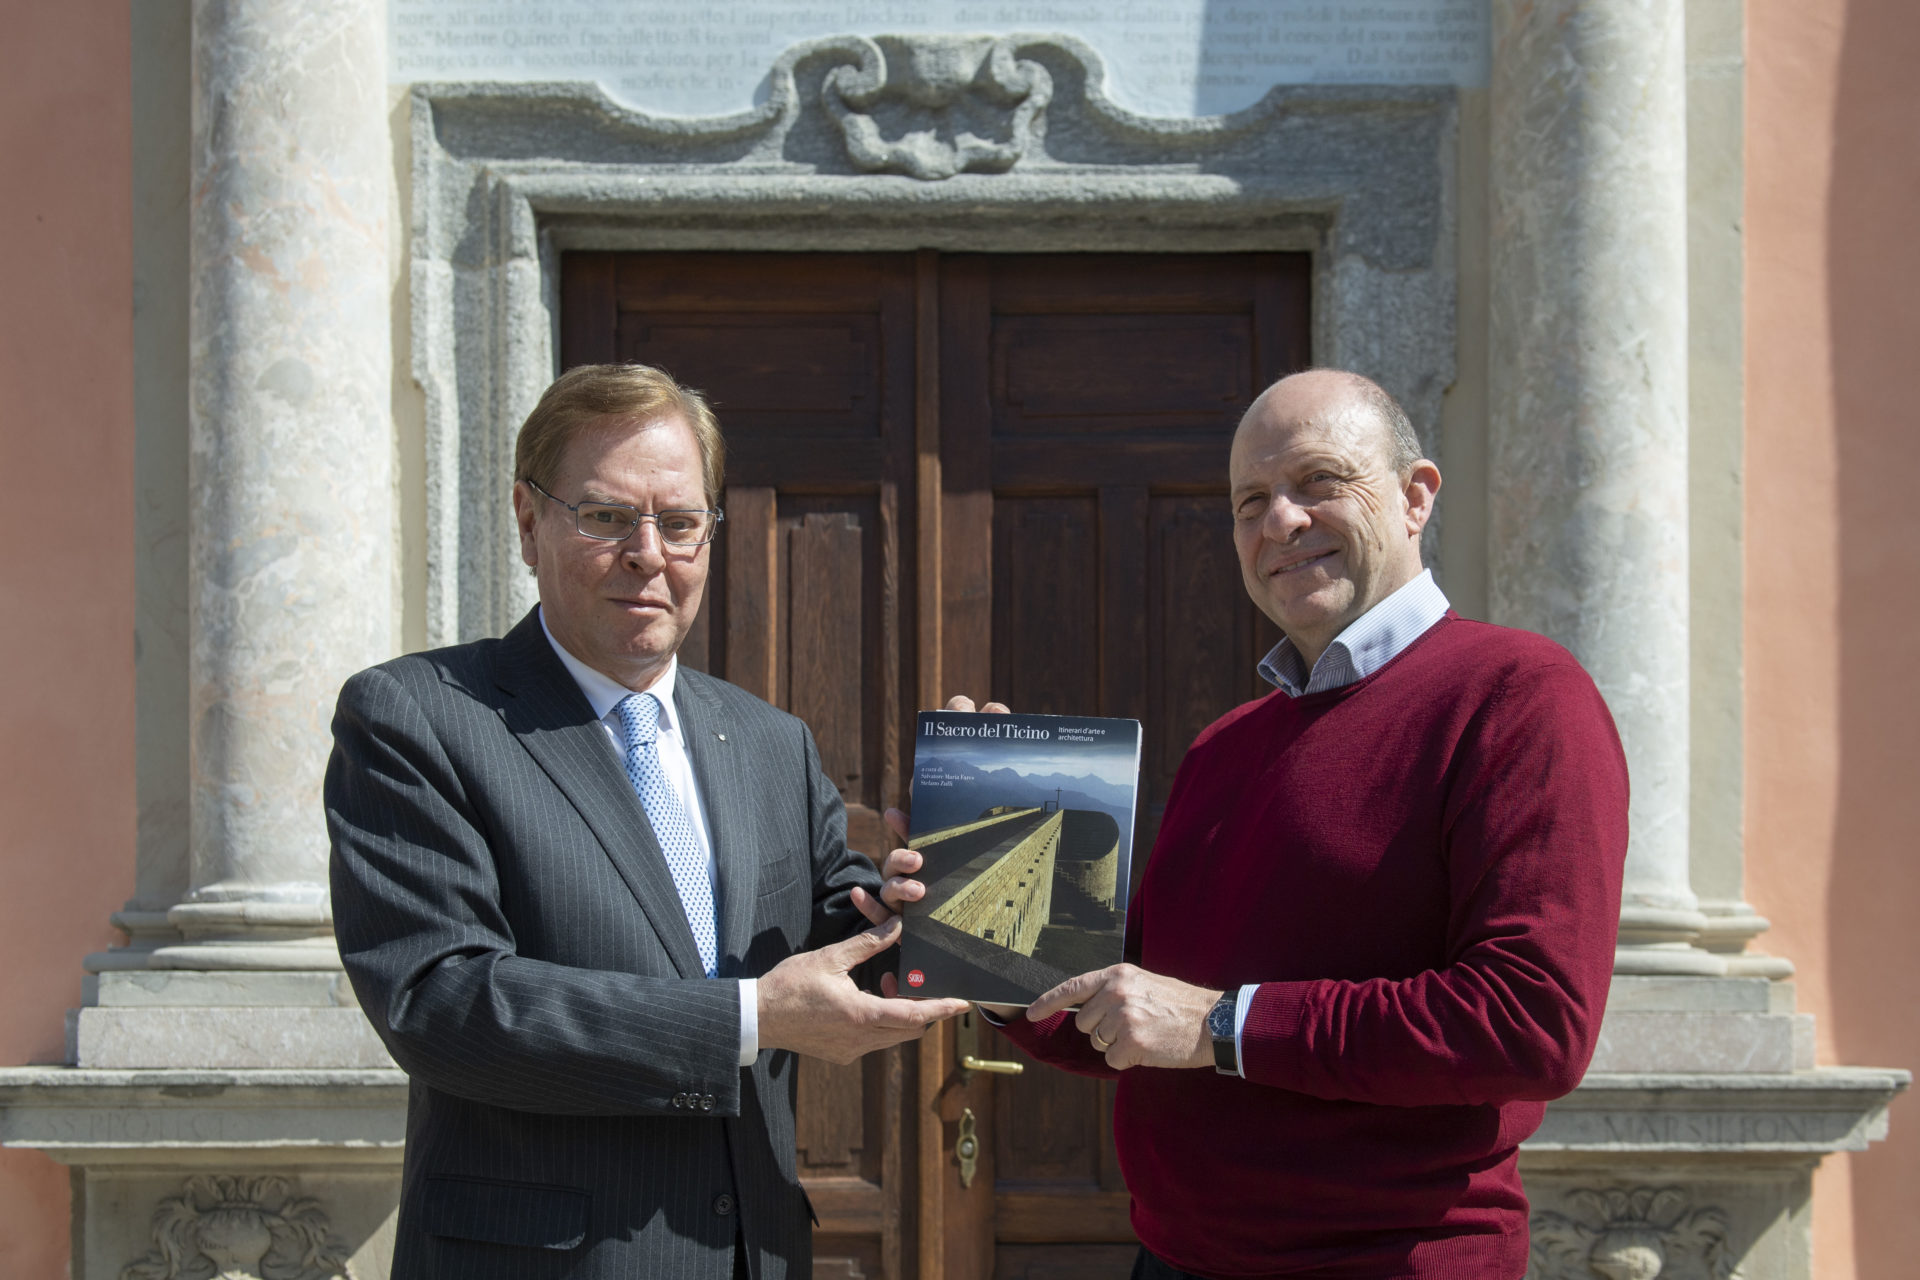 Il libro "Il Sacro del Ticino" di Salvatore Maria Fares (sinistra) con Stefano Zuffi